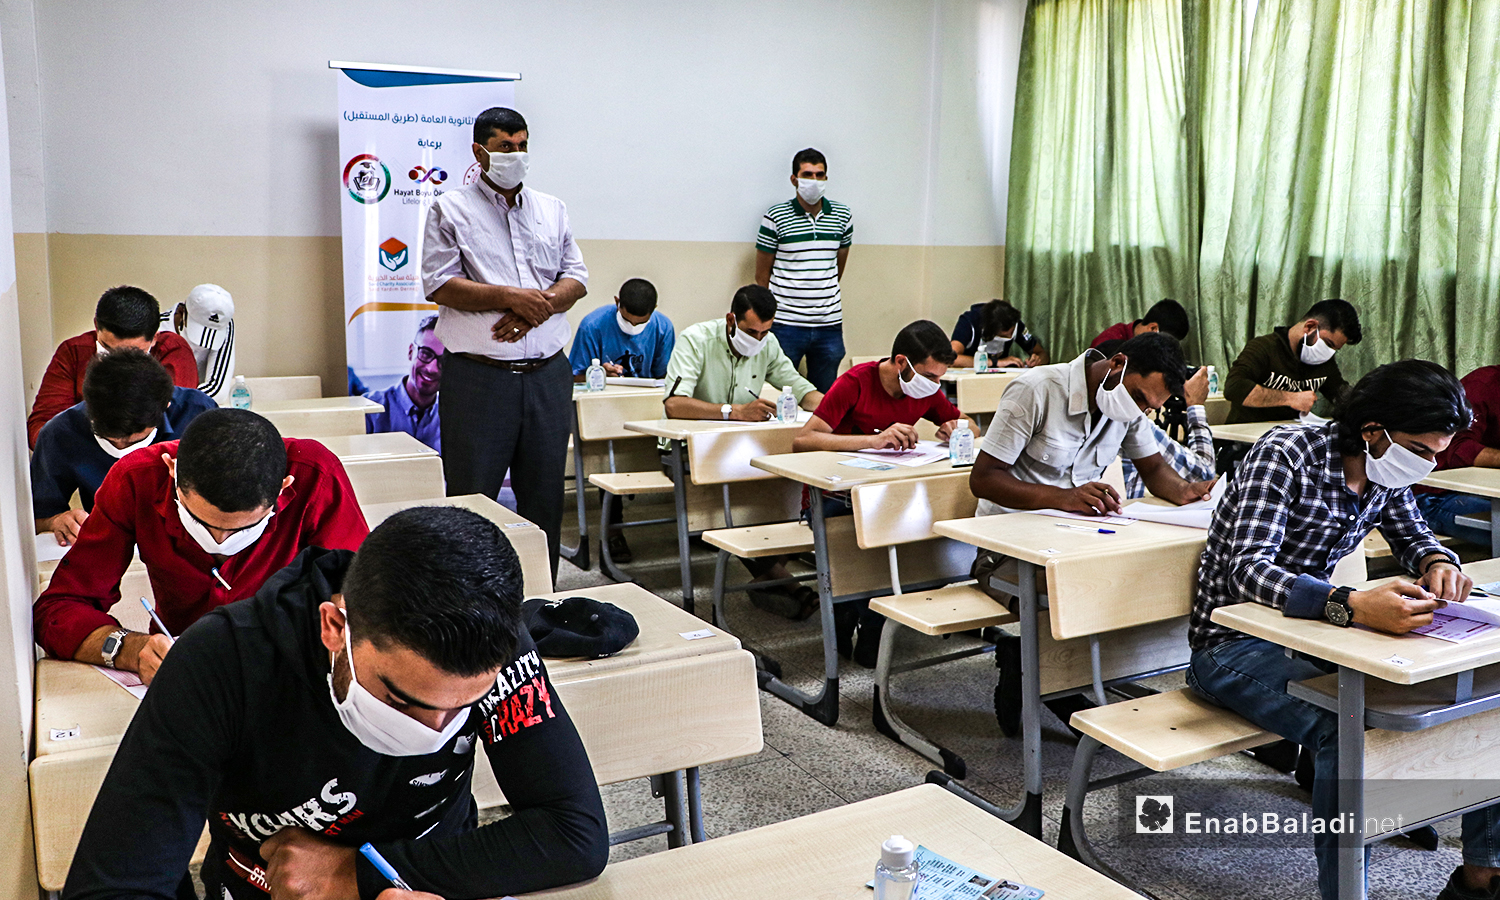 طلاب يقومون باجراء الامتحانات النهائية للشهادة الثانوية في ظل اجراءات الحماية من كورونا في مدينة الباب بريف حلب الشمالي - 12 من تموز 2020 (عنب بلدي / عاصم الملحم )